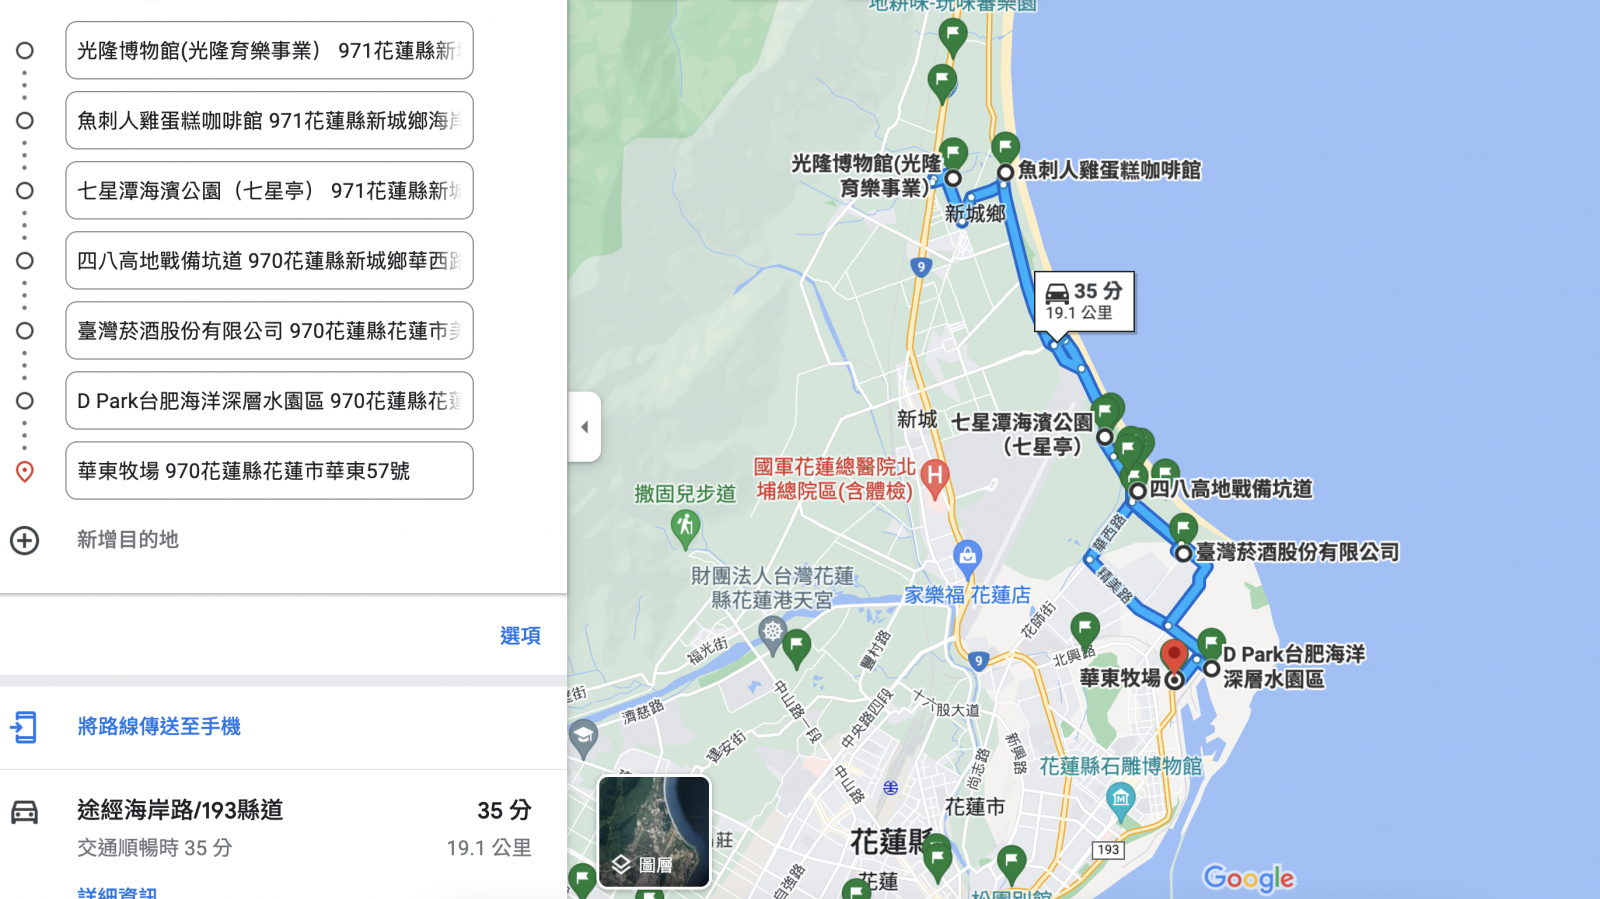 花蓮景點》台灣菸酒花蓮觀光酒廠，戶外免費親子設施玩保齡球、餵魚